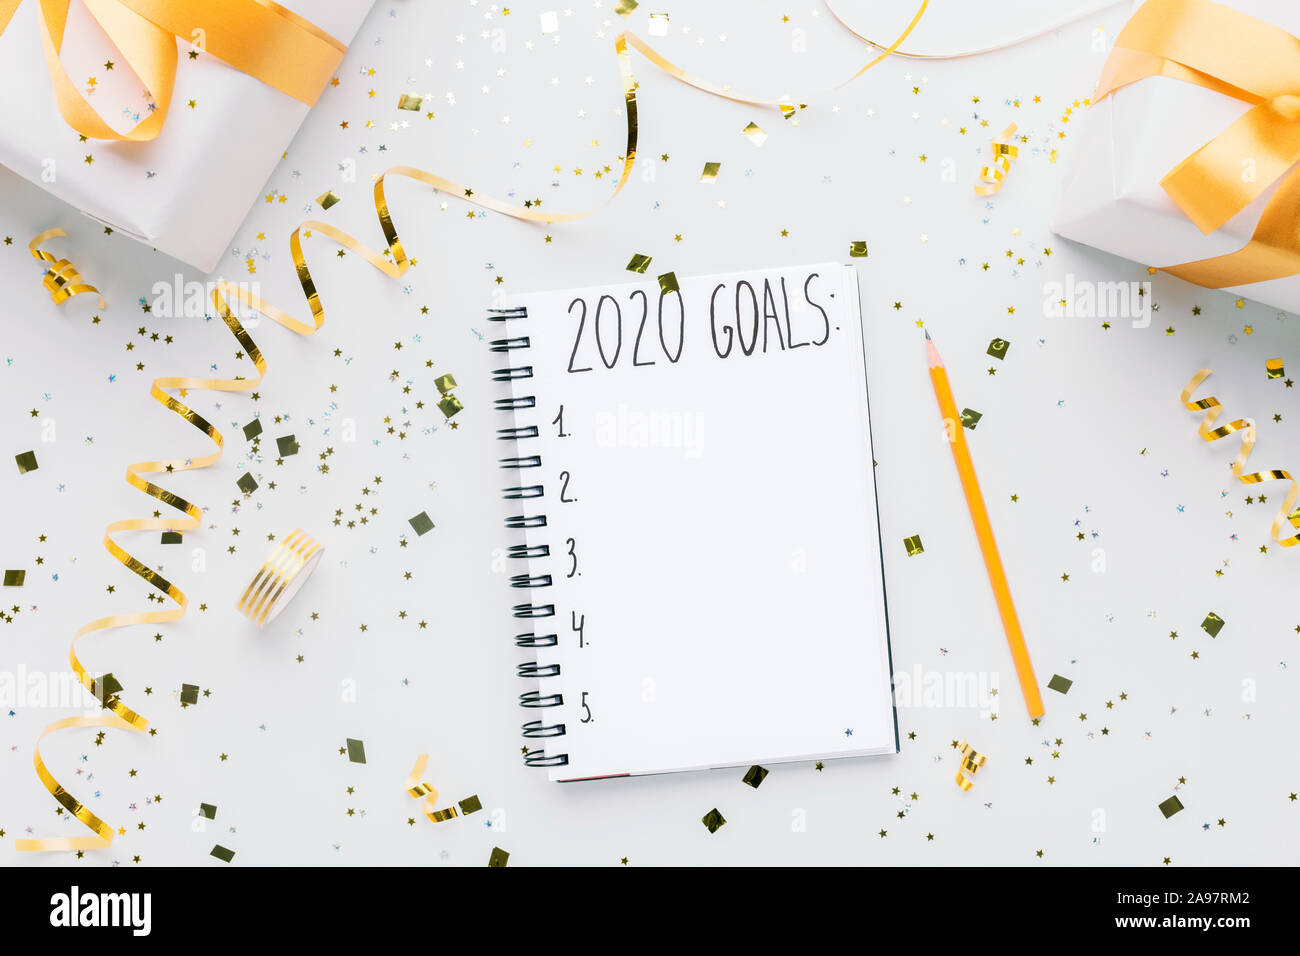 Felice anno nuovo pianificazione. Notebook con 2020 obiettivi e confezioni regalo su sfondo bianco, spazio di copia Foto Stock